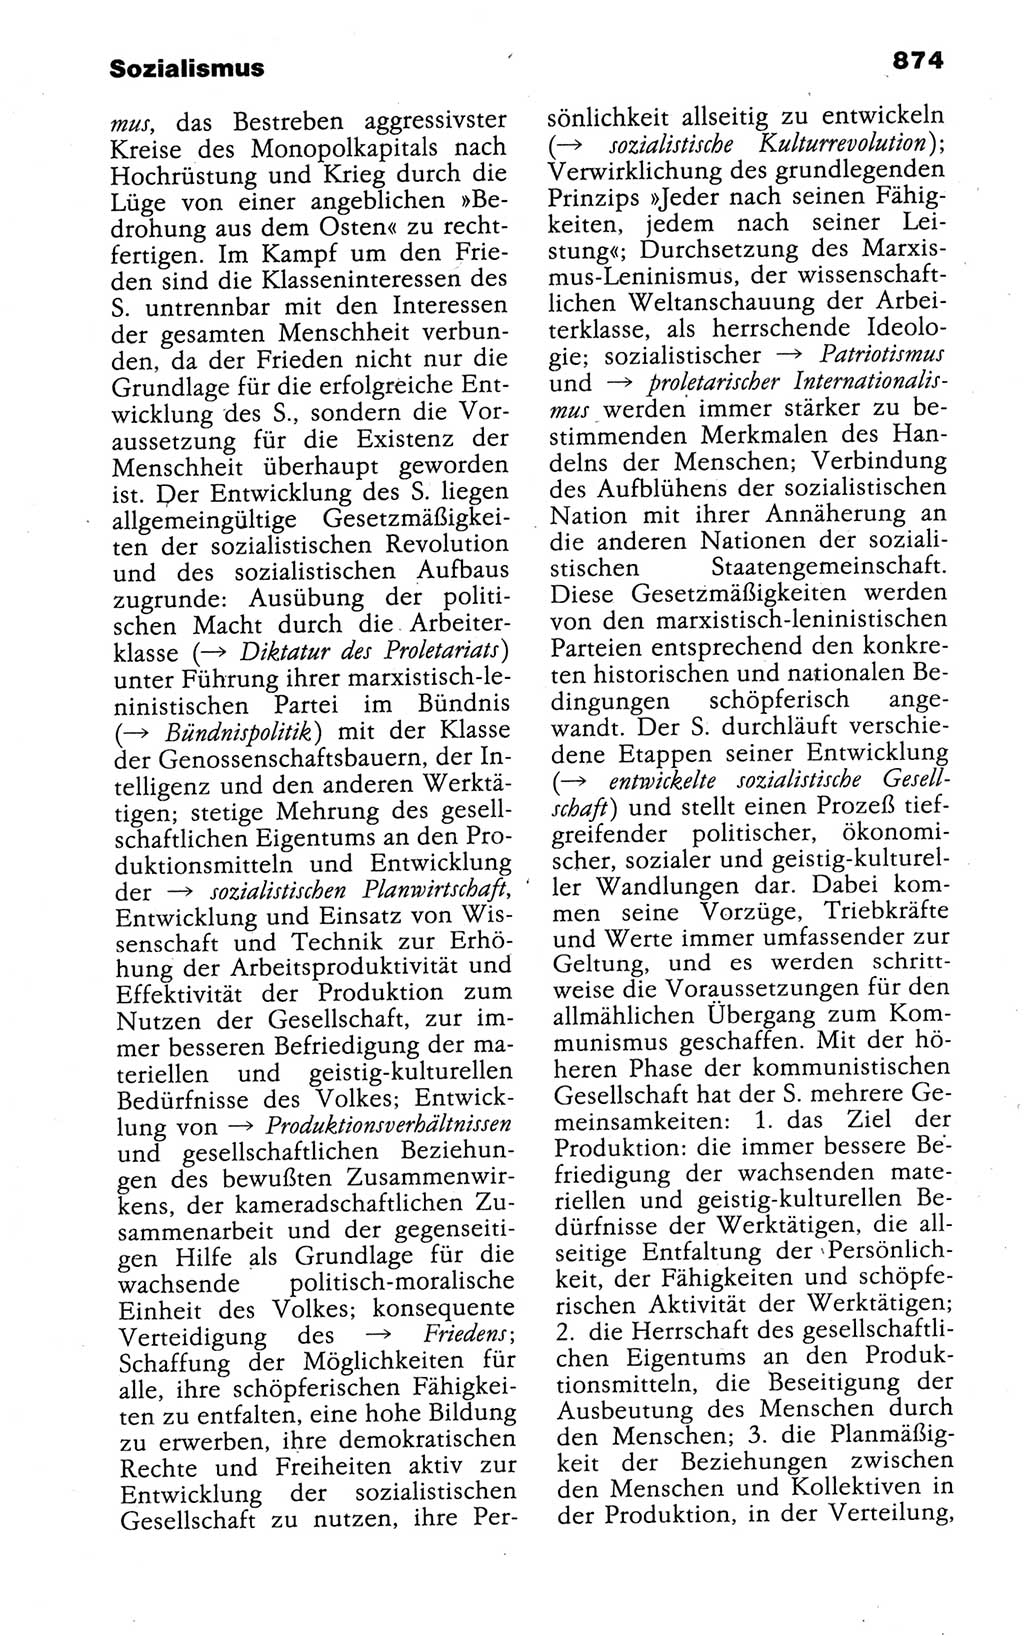 Kleines politisches Wörterbuch [Deutsche Demokratische Republik (DDR)] 1988, Seite 874 (Kl. pol. Wb. DDR 1988, S. 874)